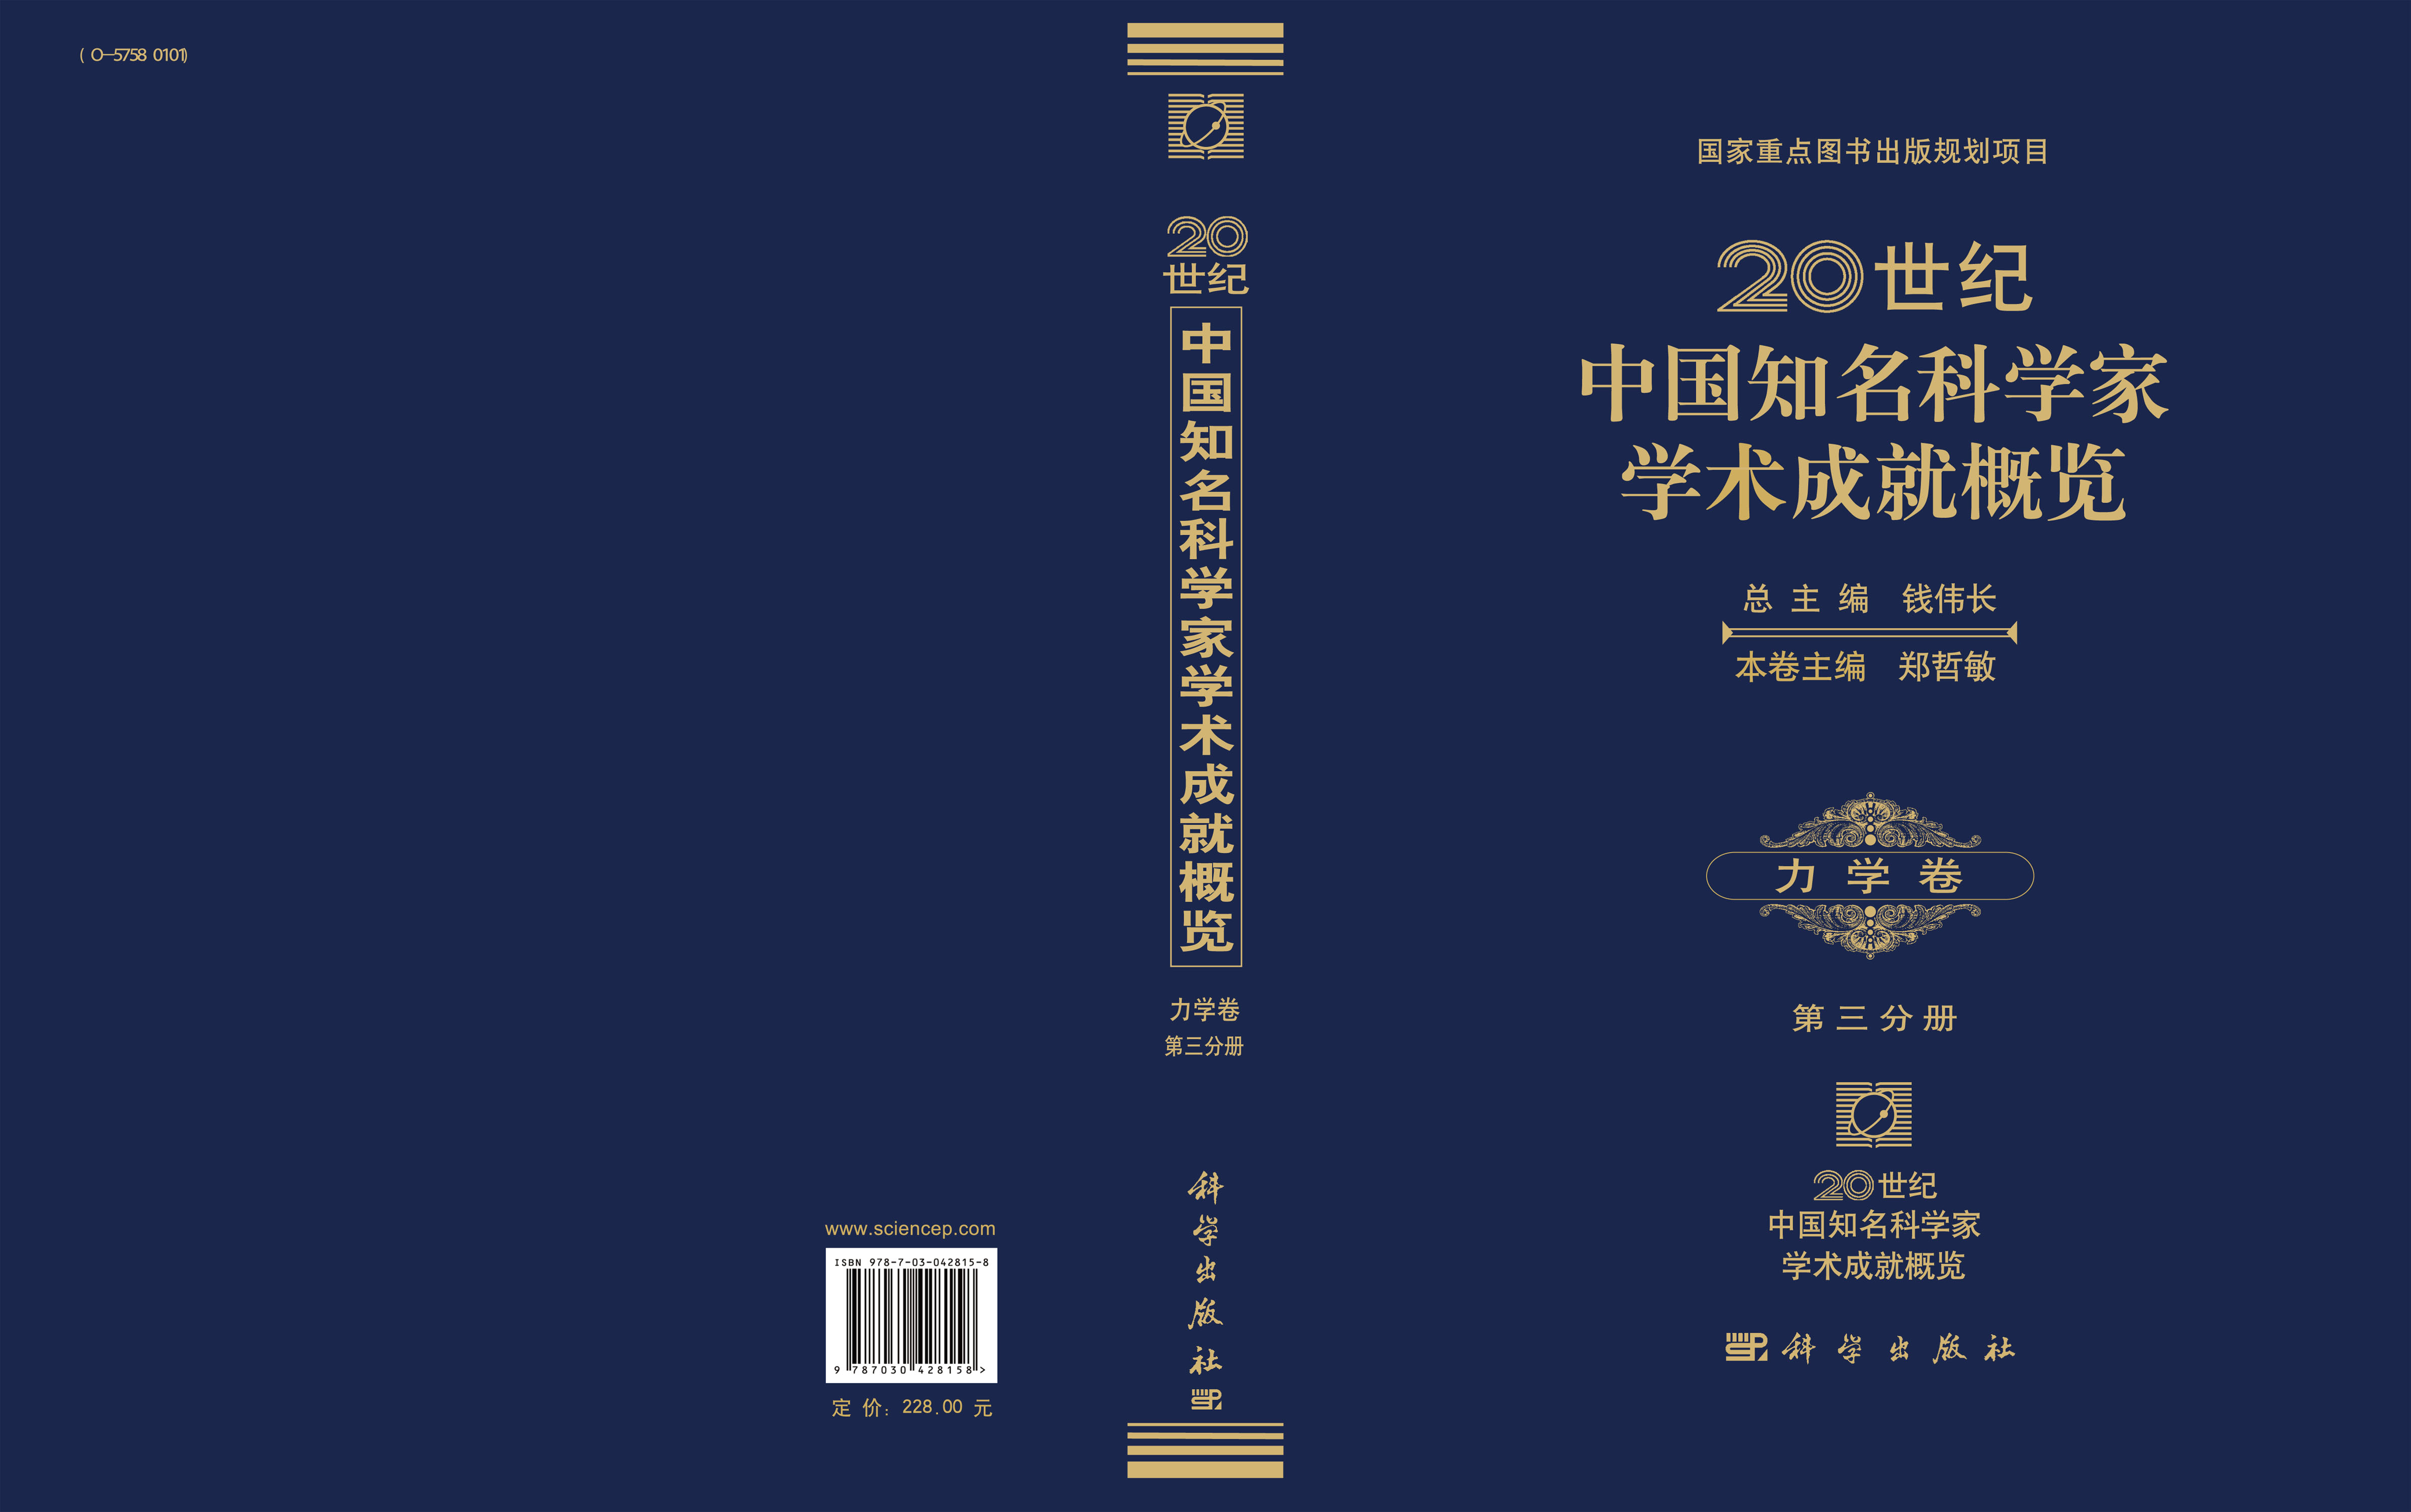 20世纪中国知名科学家学术成就概览・力学卷・第三分册